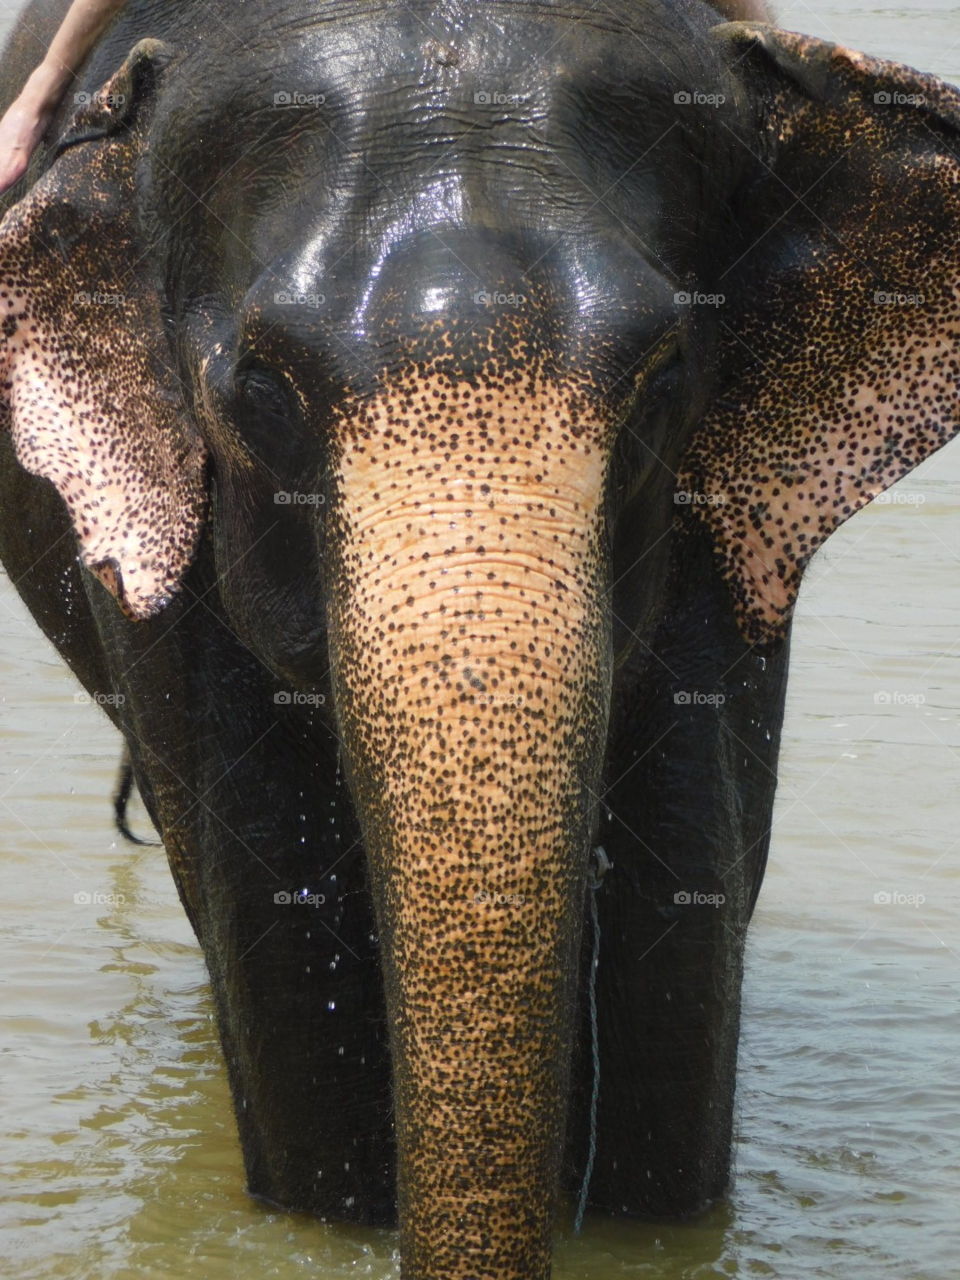 Asian elephant bathing